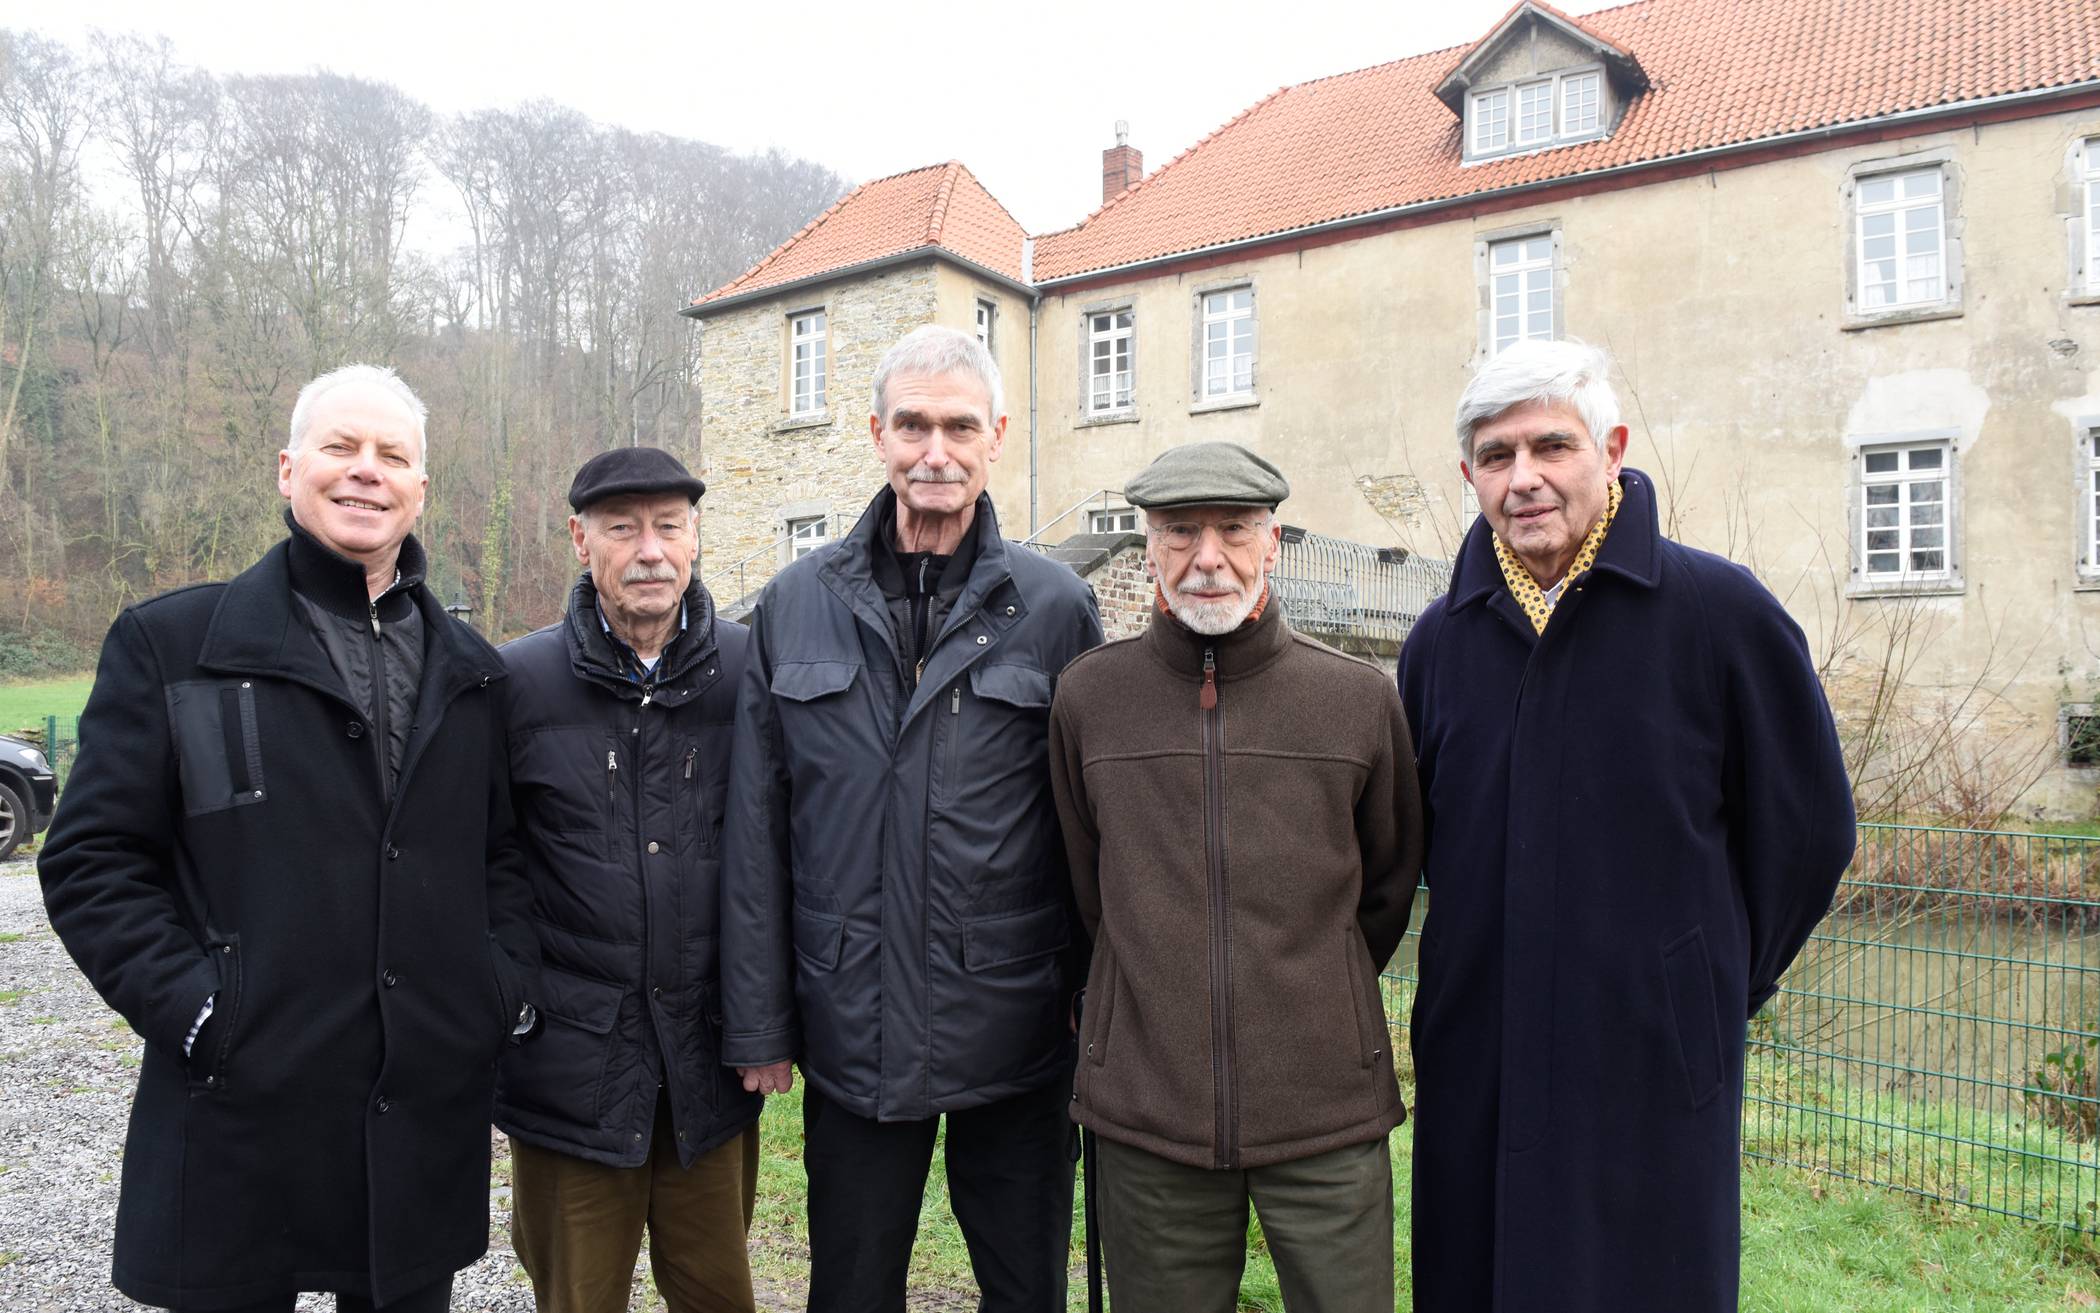  Horst Osmann (links) mit weiteren Mitgliedern des Bergischen Geschichtsvereins vor Haus Brück. 